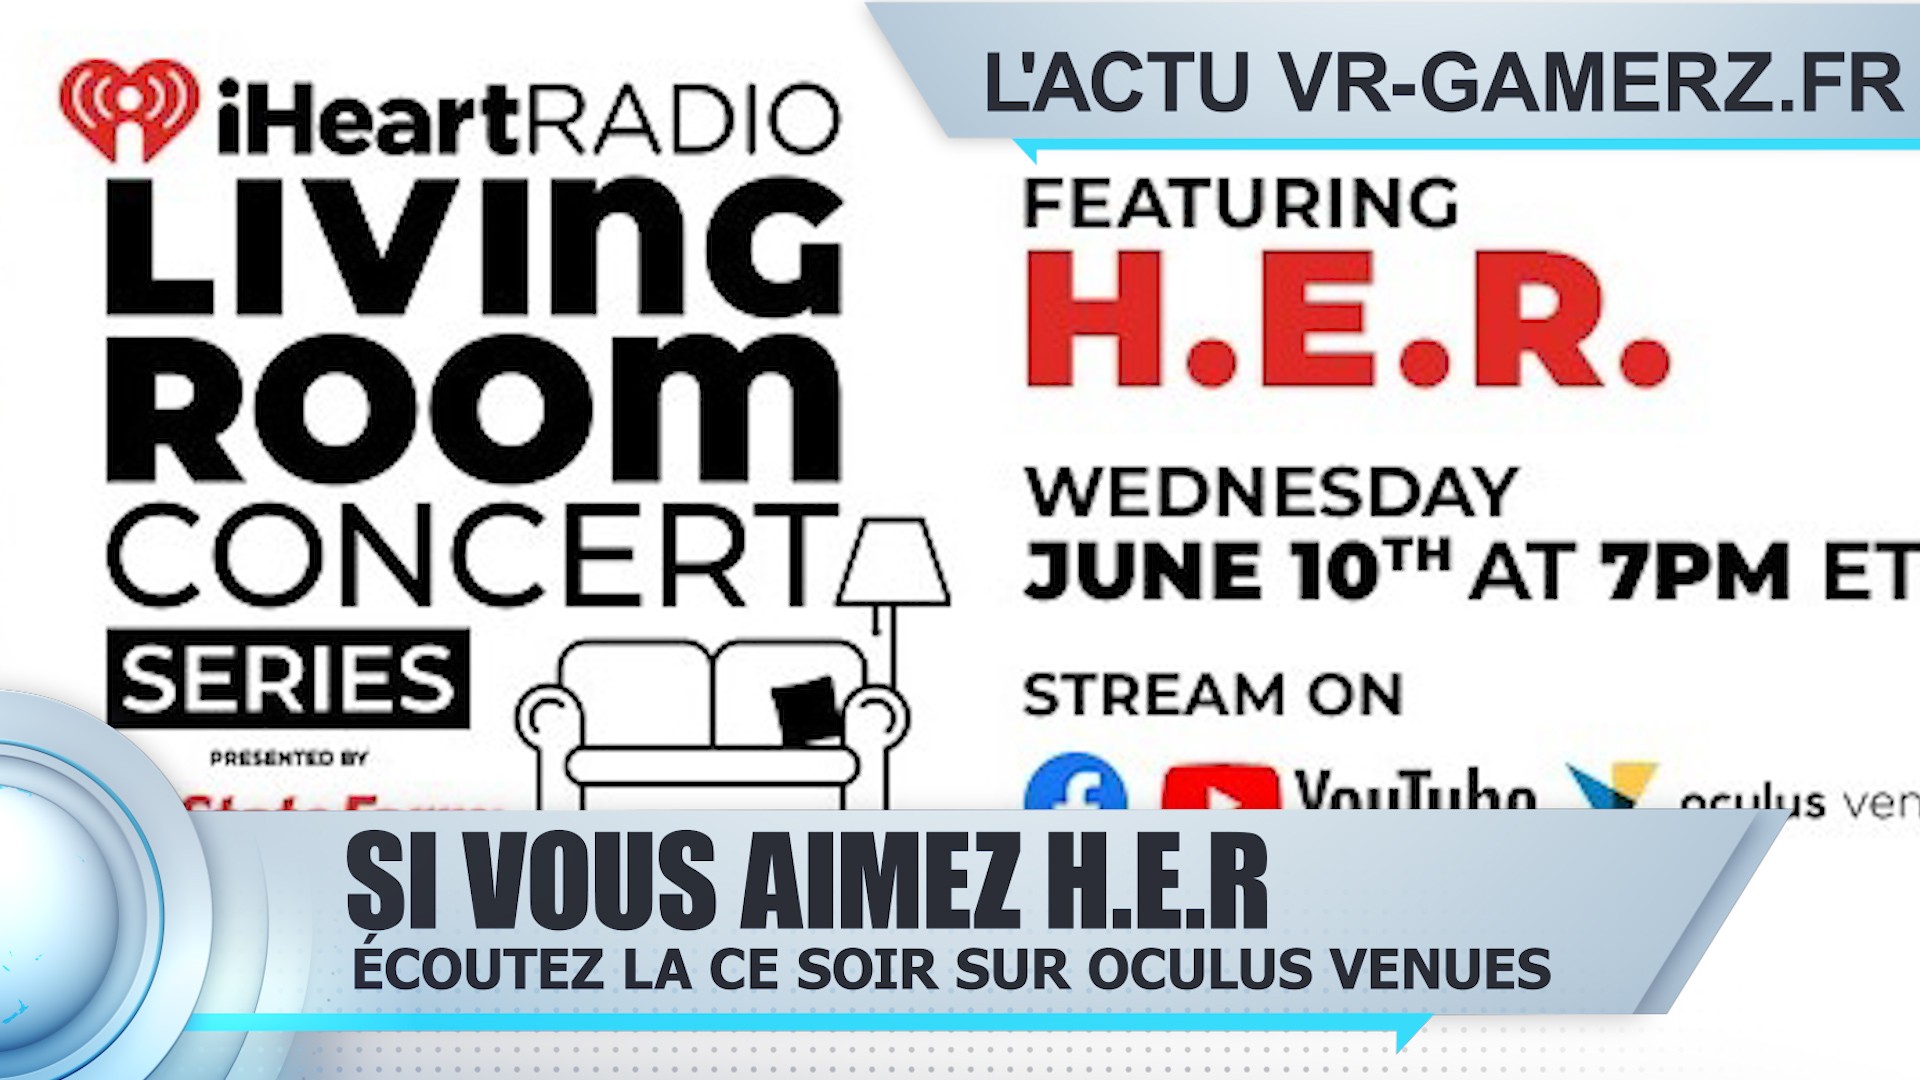 H.E.R sera sur Oculus venues ce soir pour un mini concert